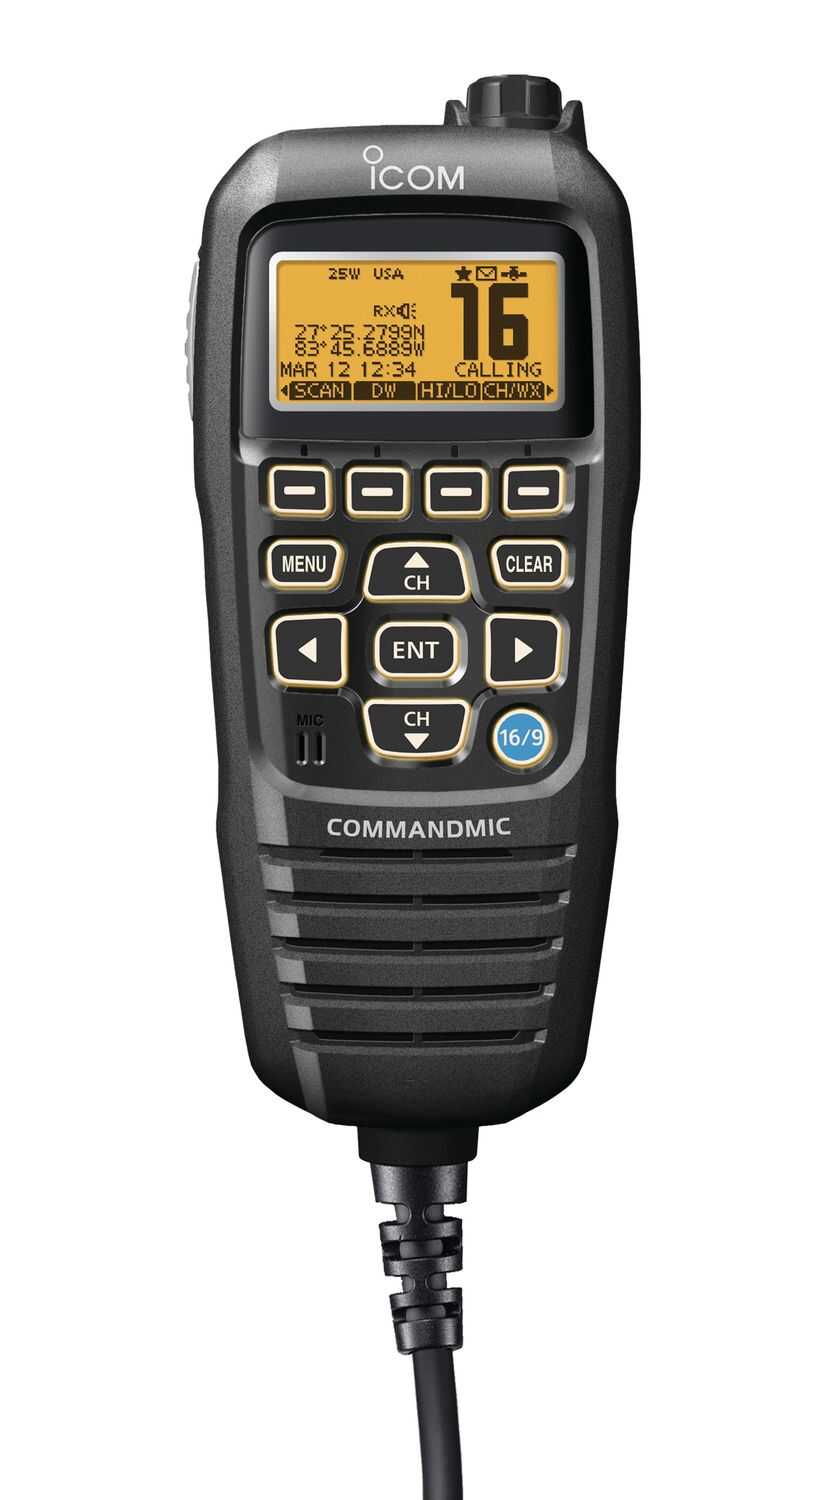 ギフト/プレゼント/ご褒美] ID-4100 アンテナMR-77 P610 DT712Bセット アイコム ICOM 144 430ＭＨｚ  デュアルバンド デジタル20W アマチュア無線機 GPSレシーバー内蔵